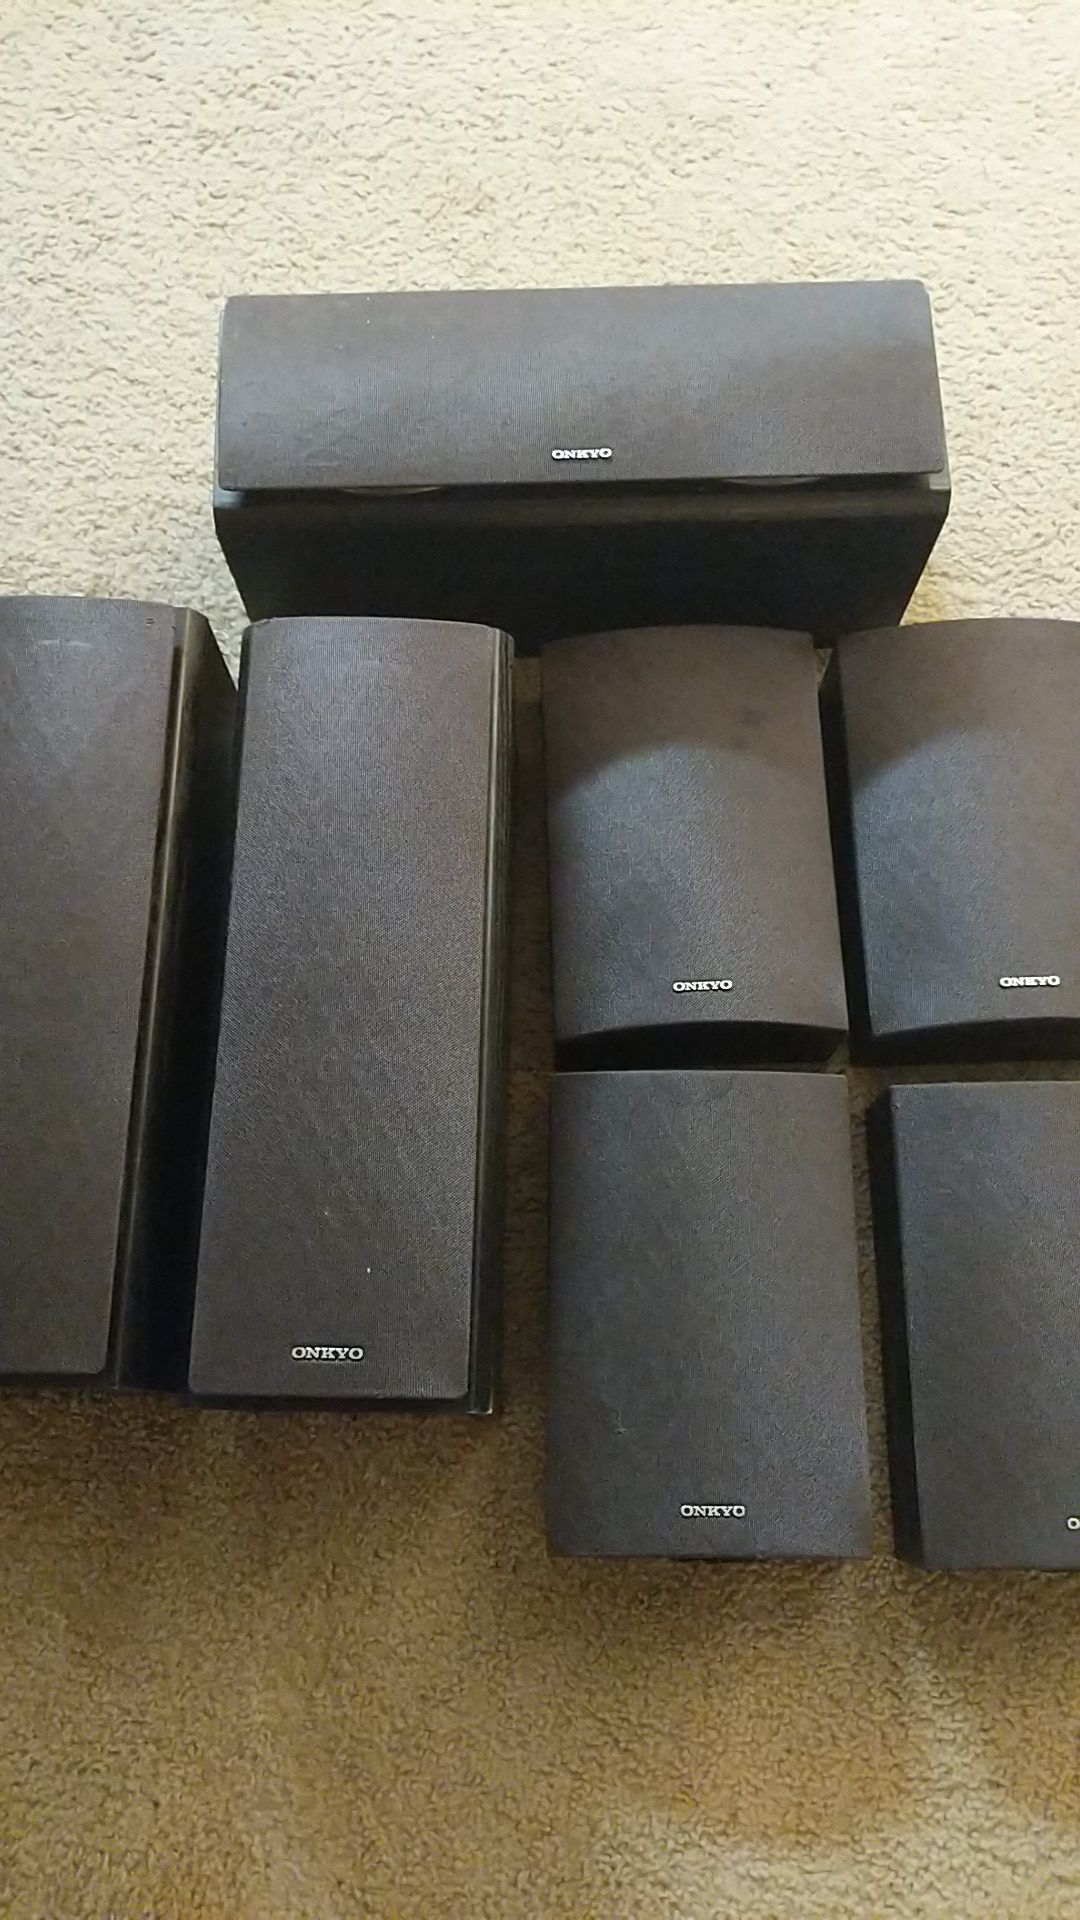 Onkyo speakers, 7.1 surround sound